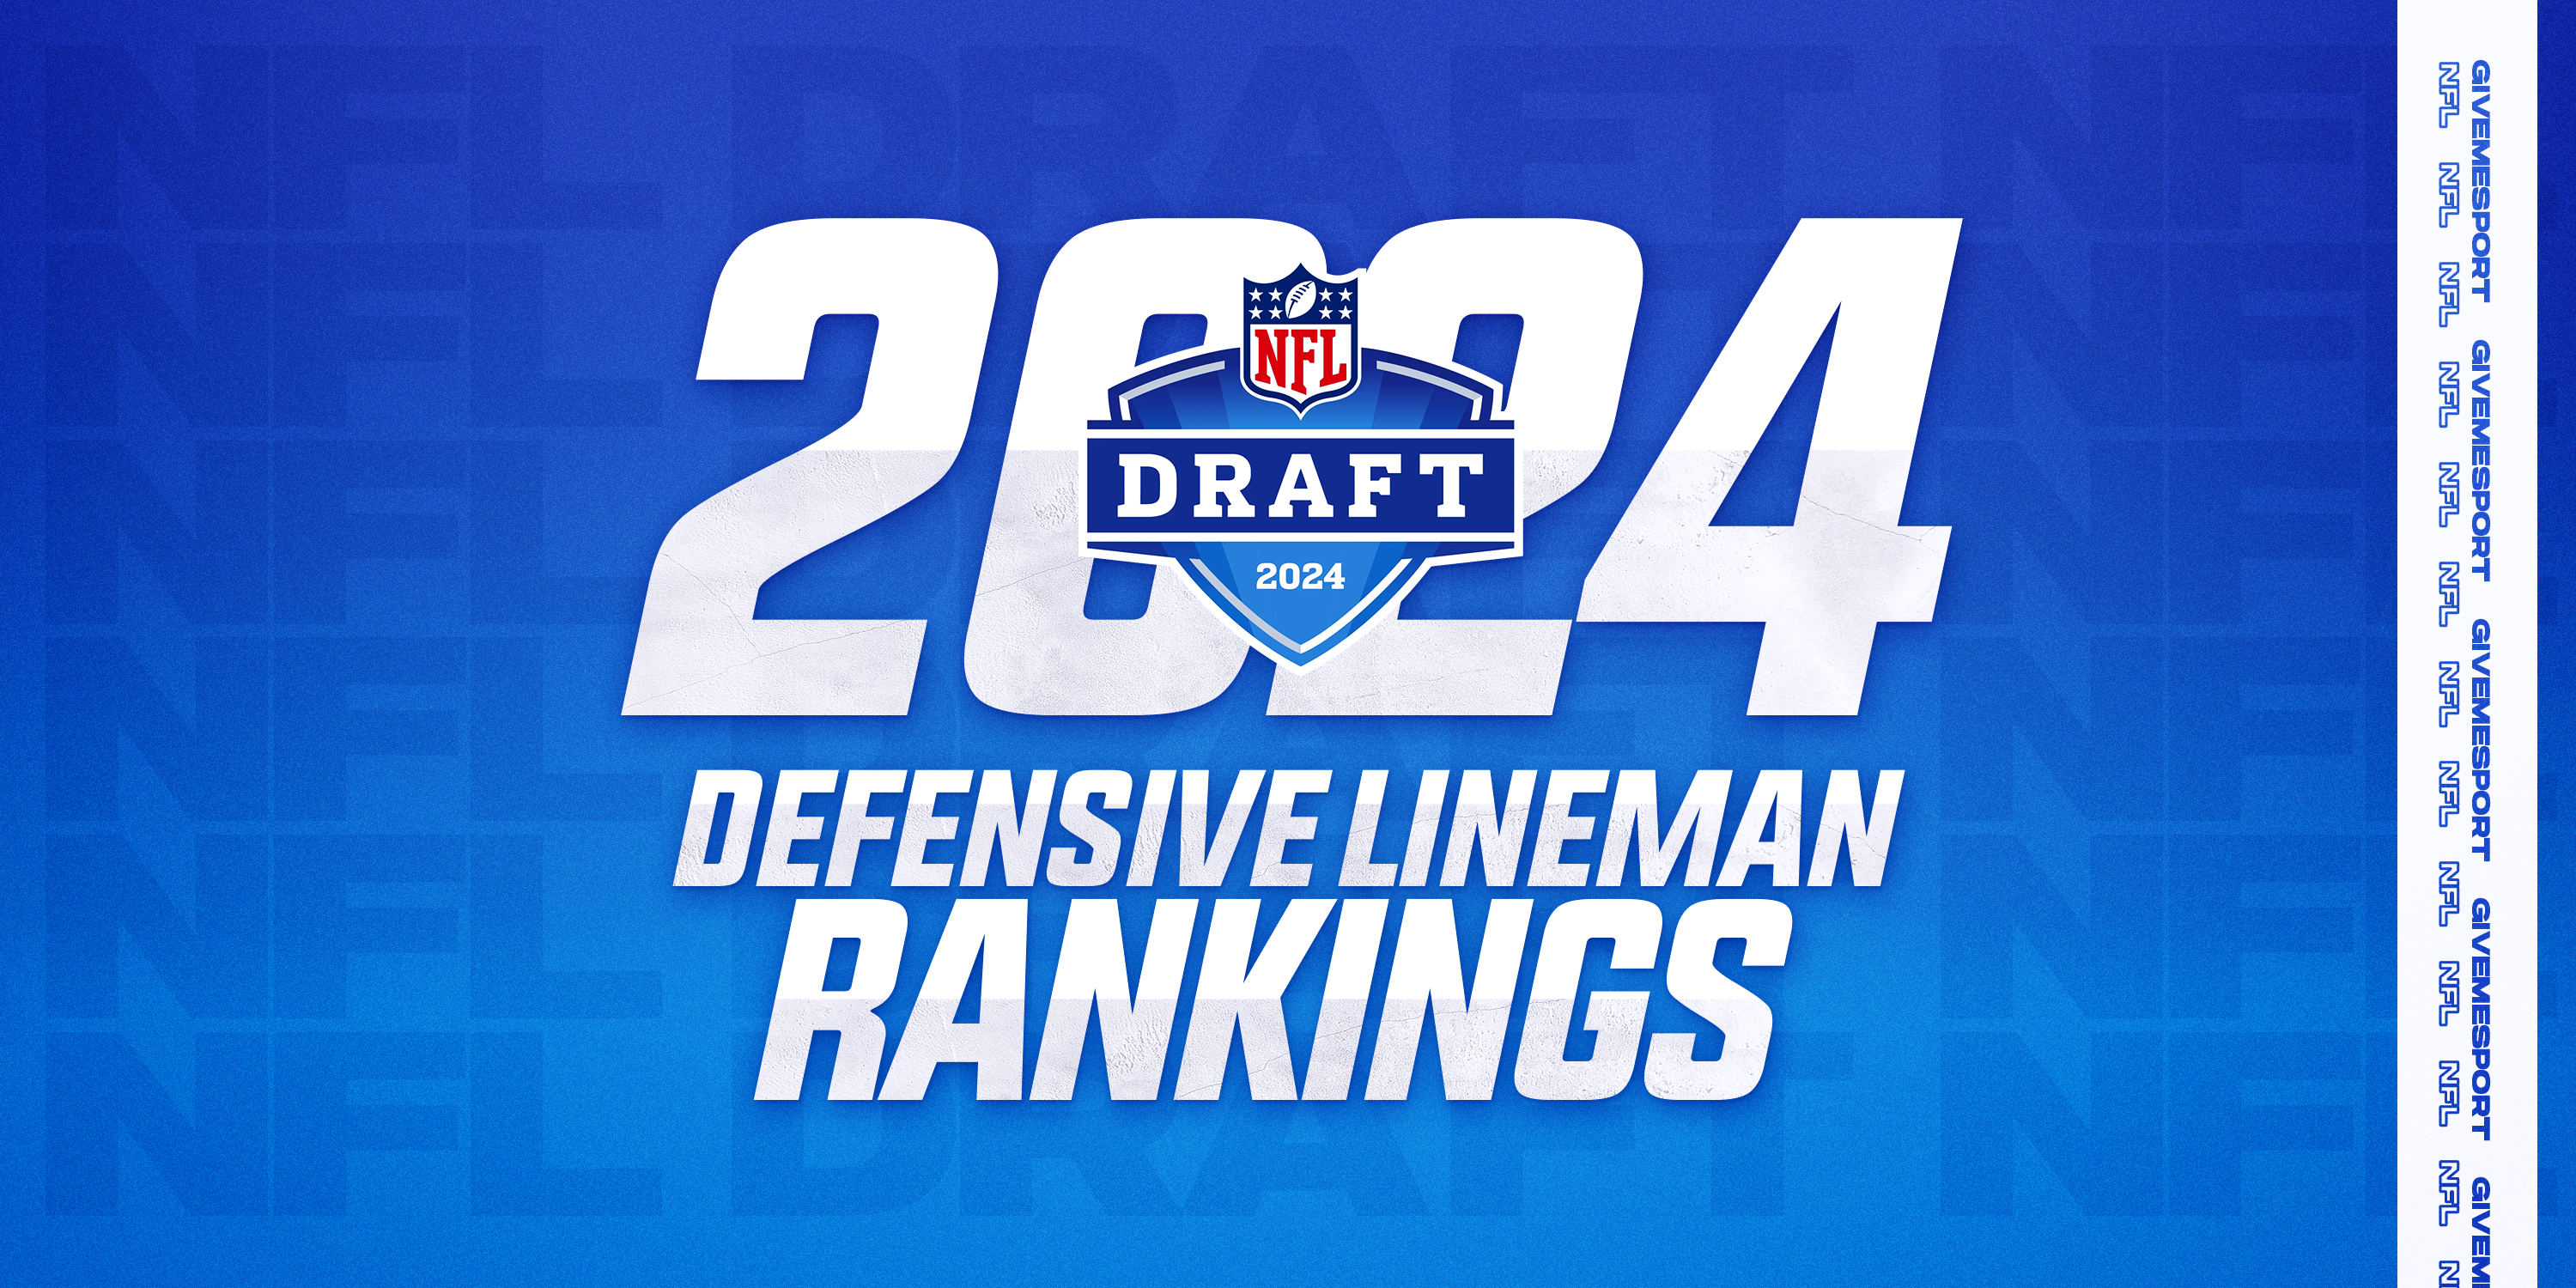 NFL Draft defensive line rankings